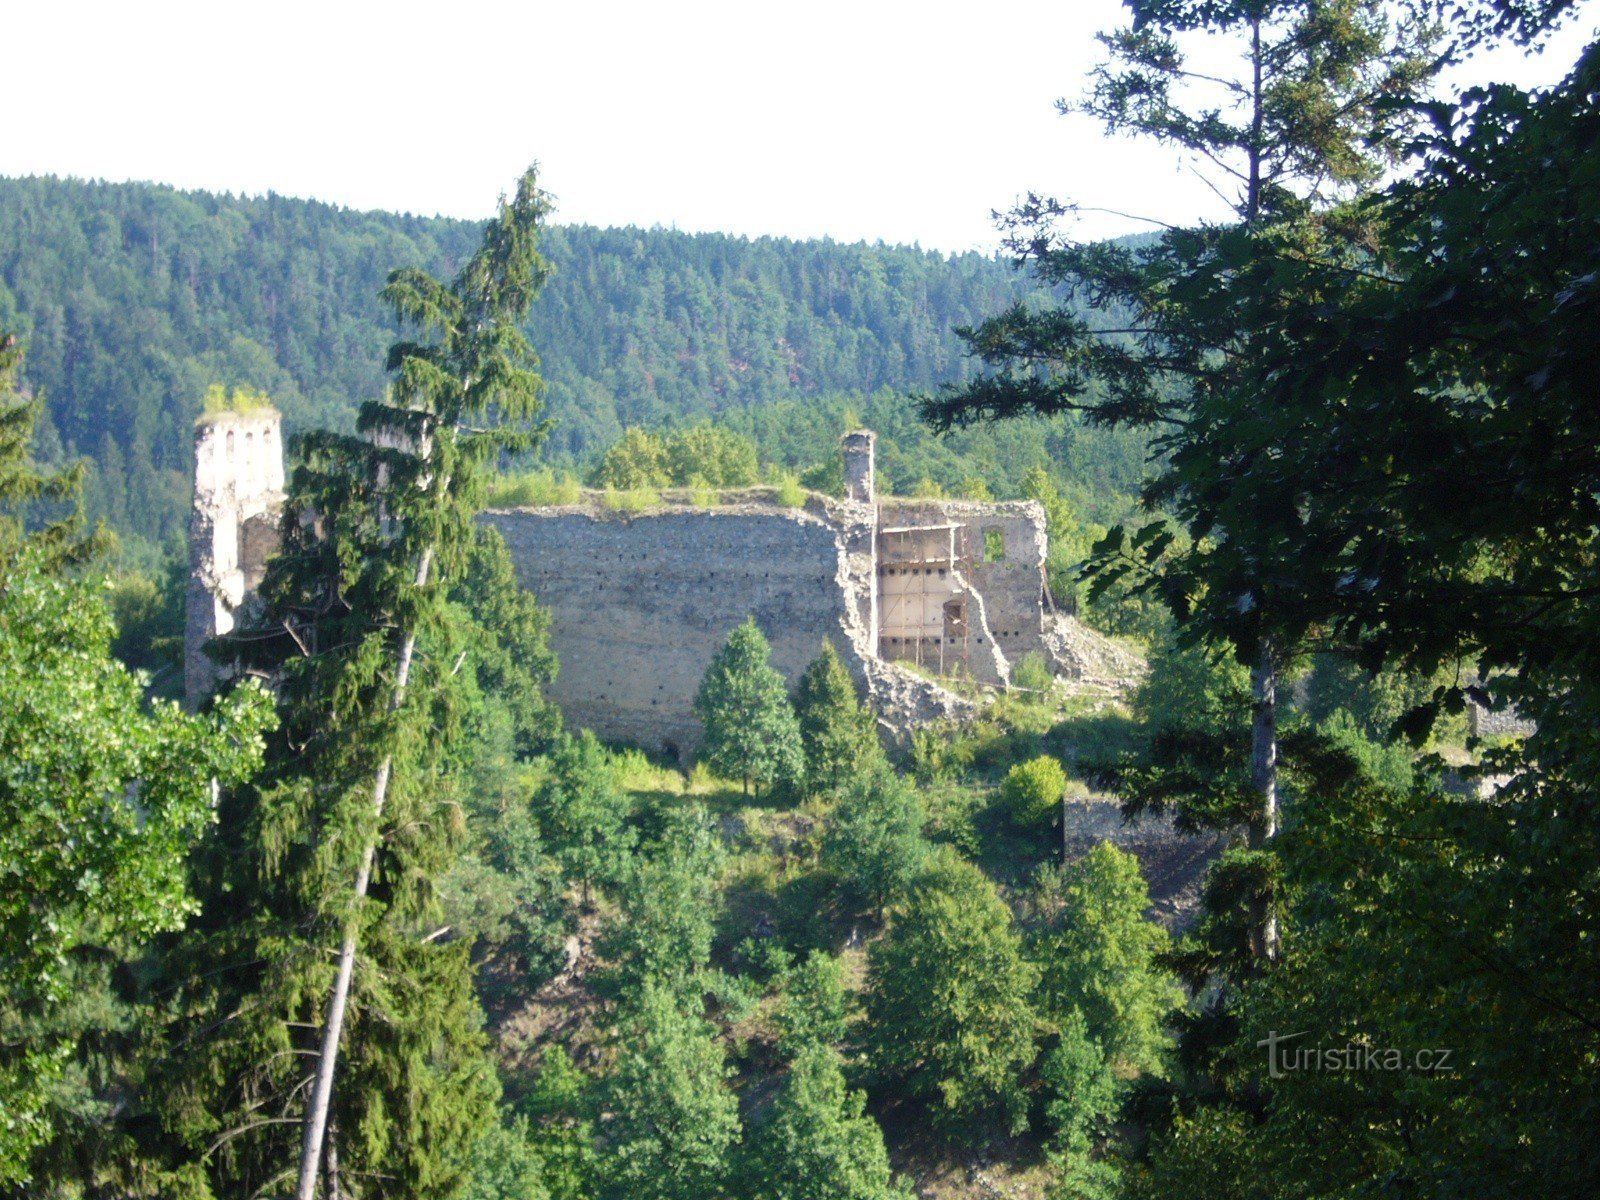 udsigt fra NS Holubov-ruten - Stará Rožmberská cesta-stedet - til Dívčí kámen-slottet